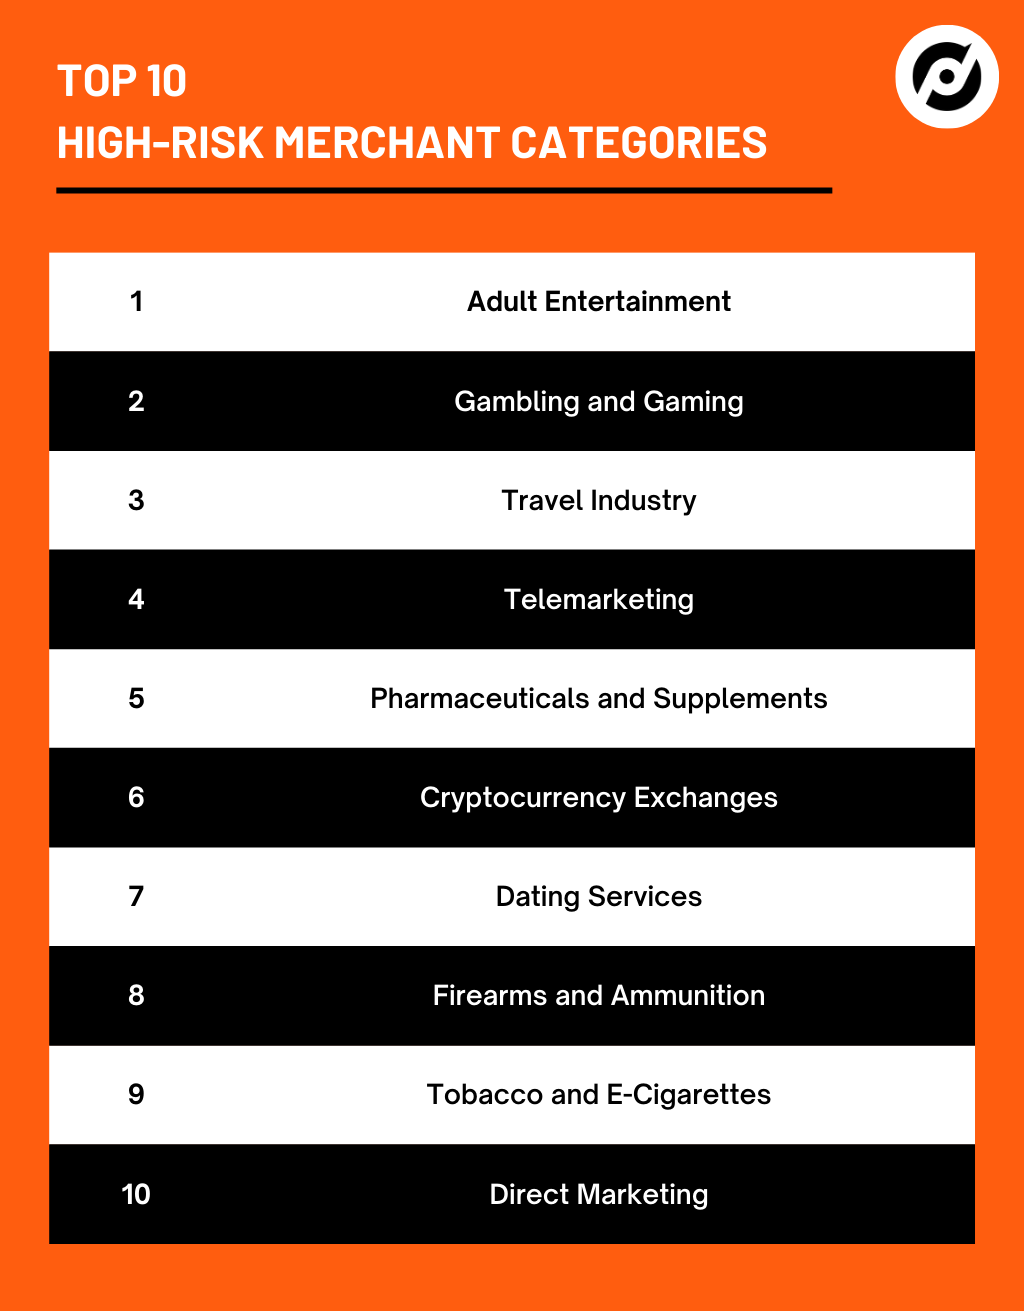 Top 10 high-risk merchant categories